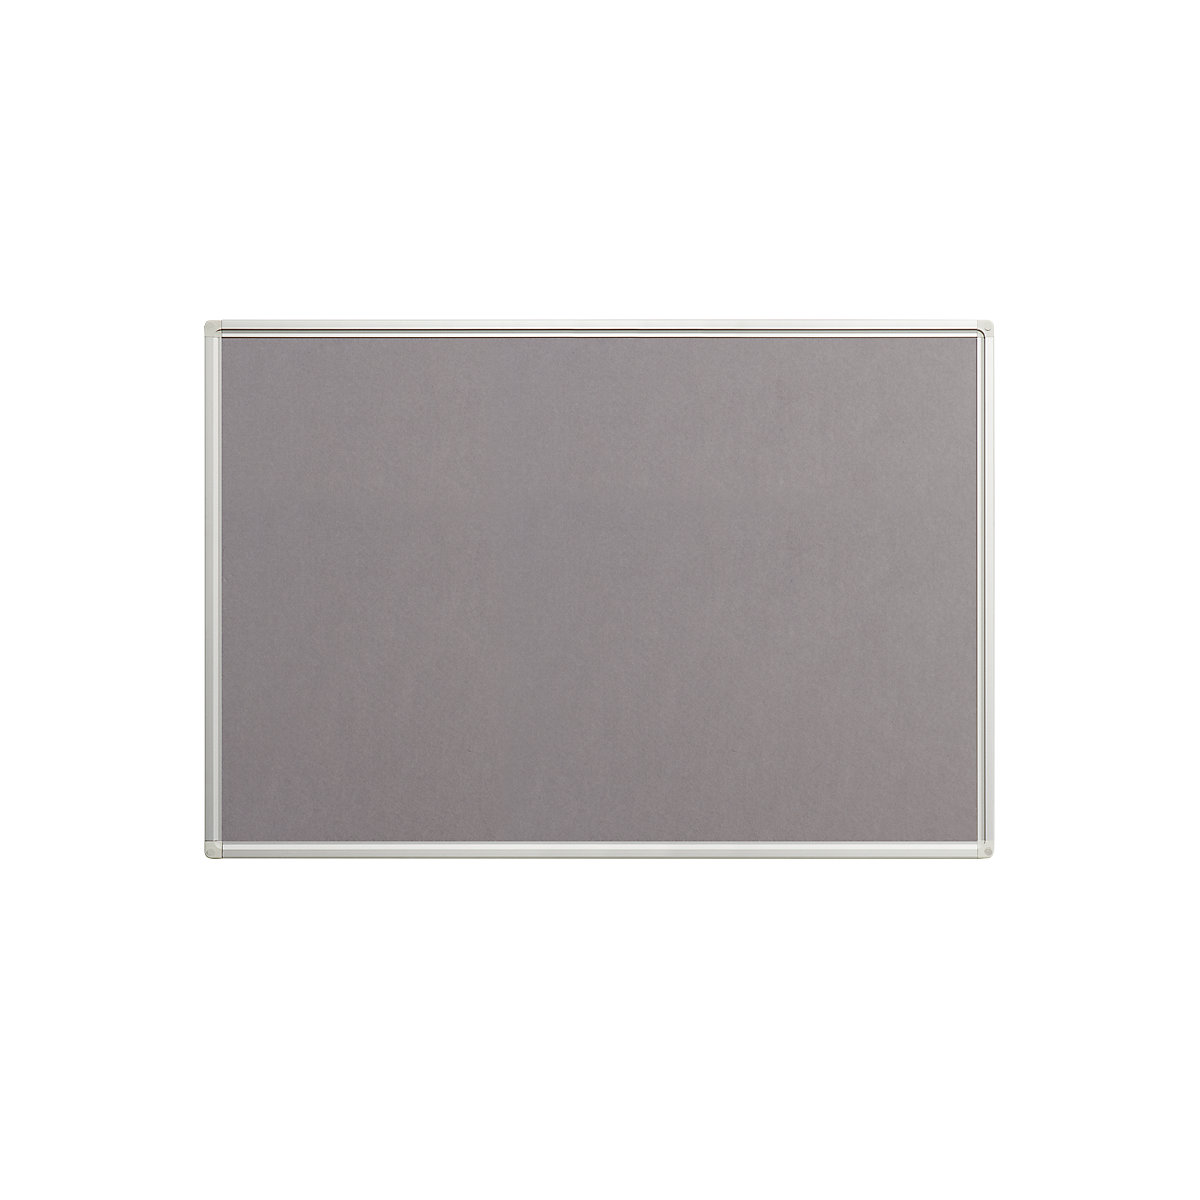 Tablica, filc, kolor szary, szer. x wys. 900 x 600 mm